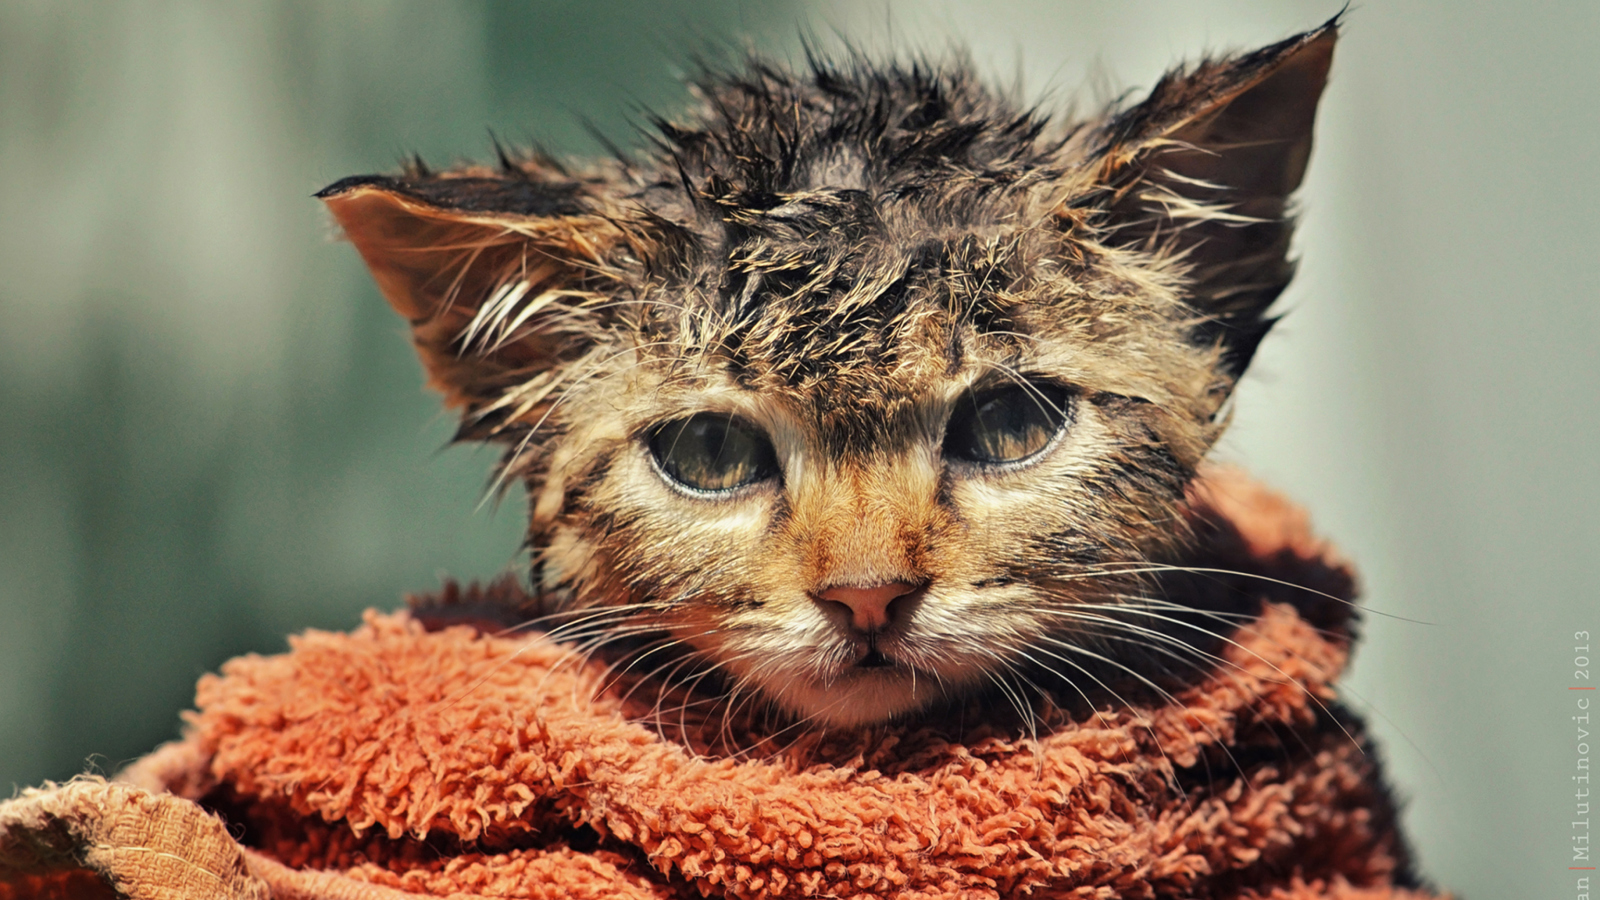 Cute Wet Kitty Cat After Having Shower wallpaper 1600x900